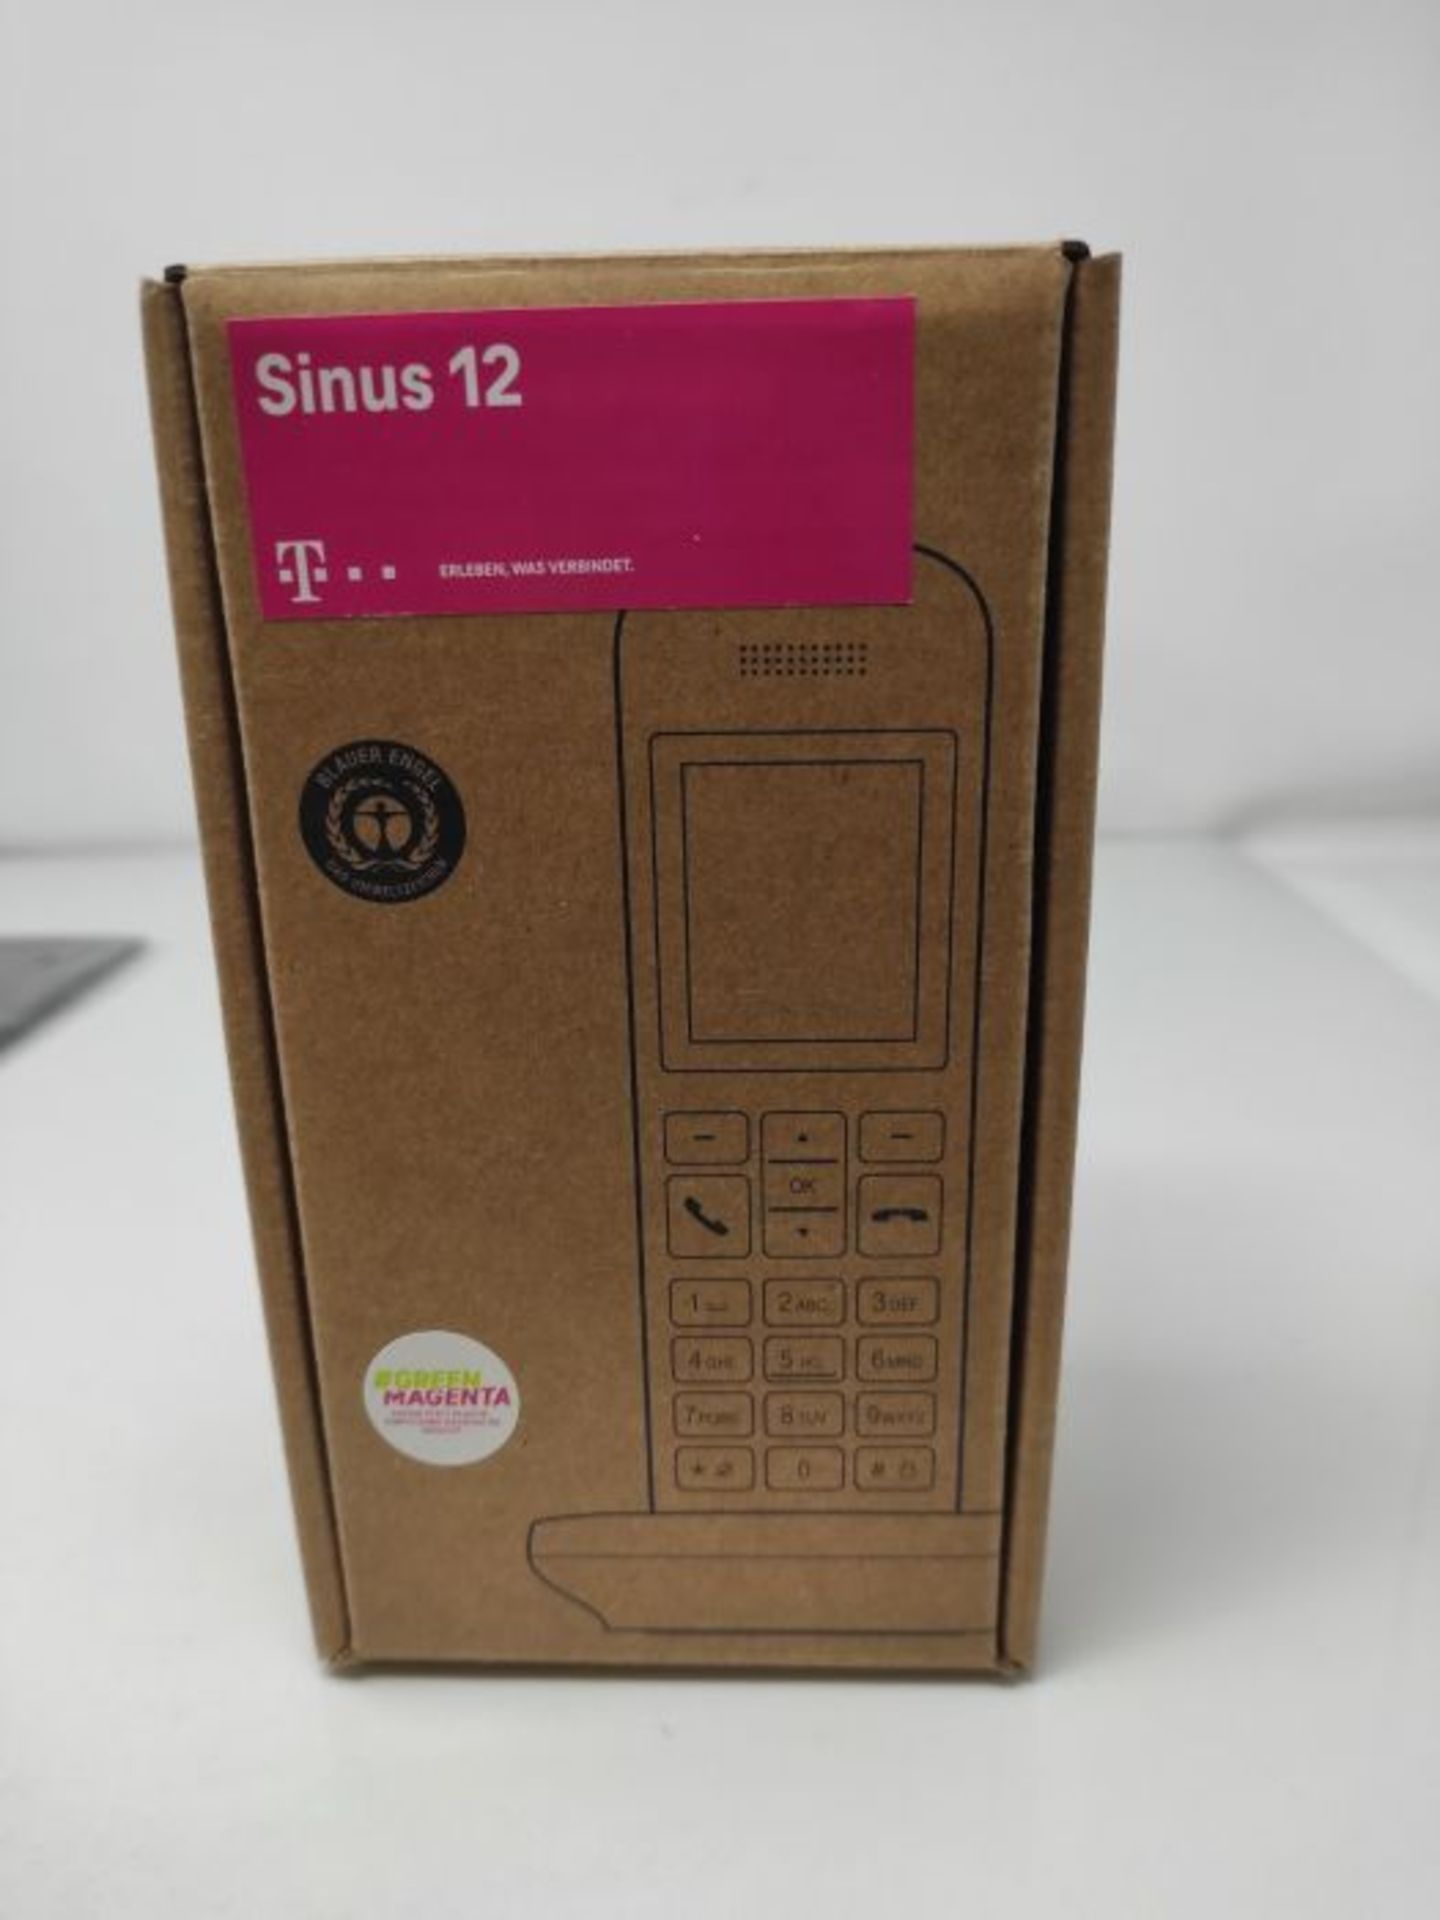 Telekom Sinus 12 in Schwarz Festnetz Telefon schnurlos, 5 cm Farbdisplay, beleuchtete - Image 2 of 3